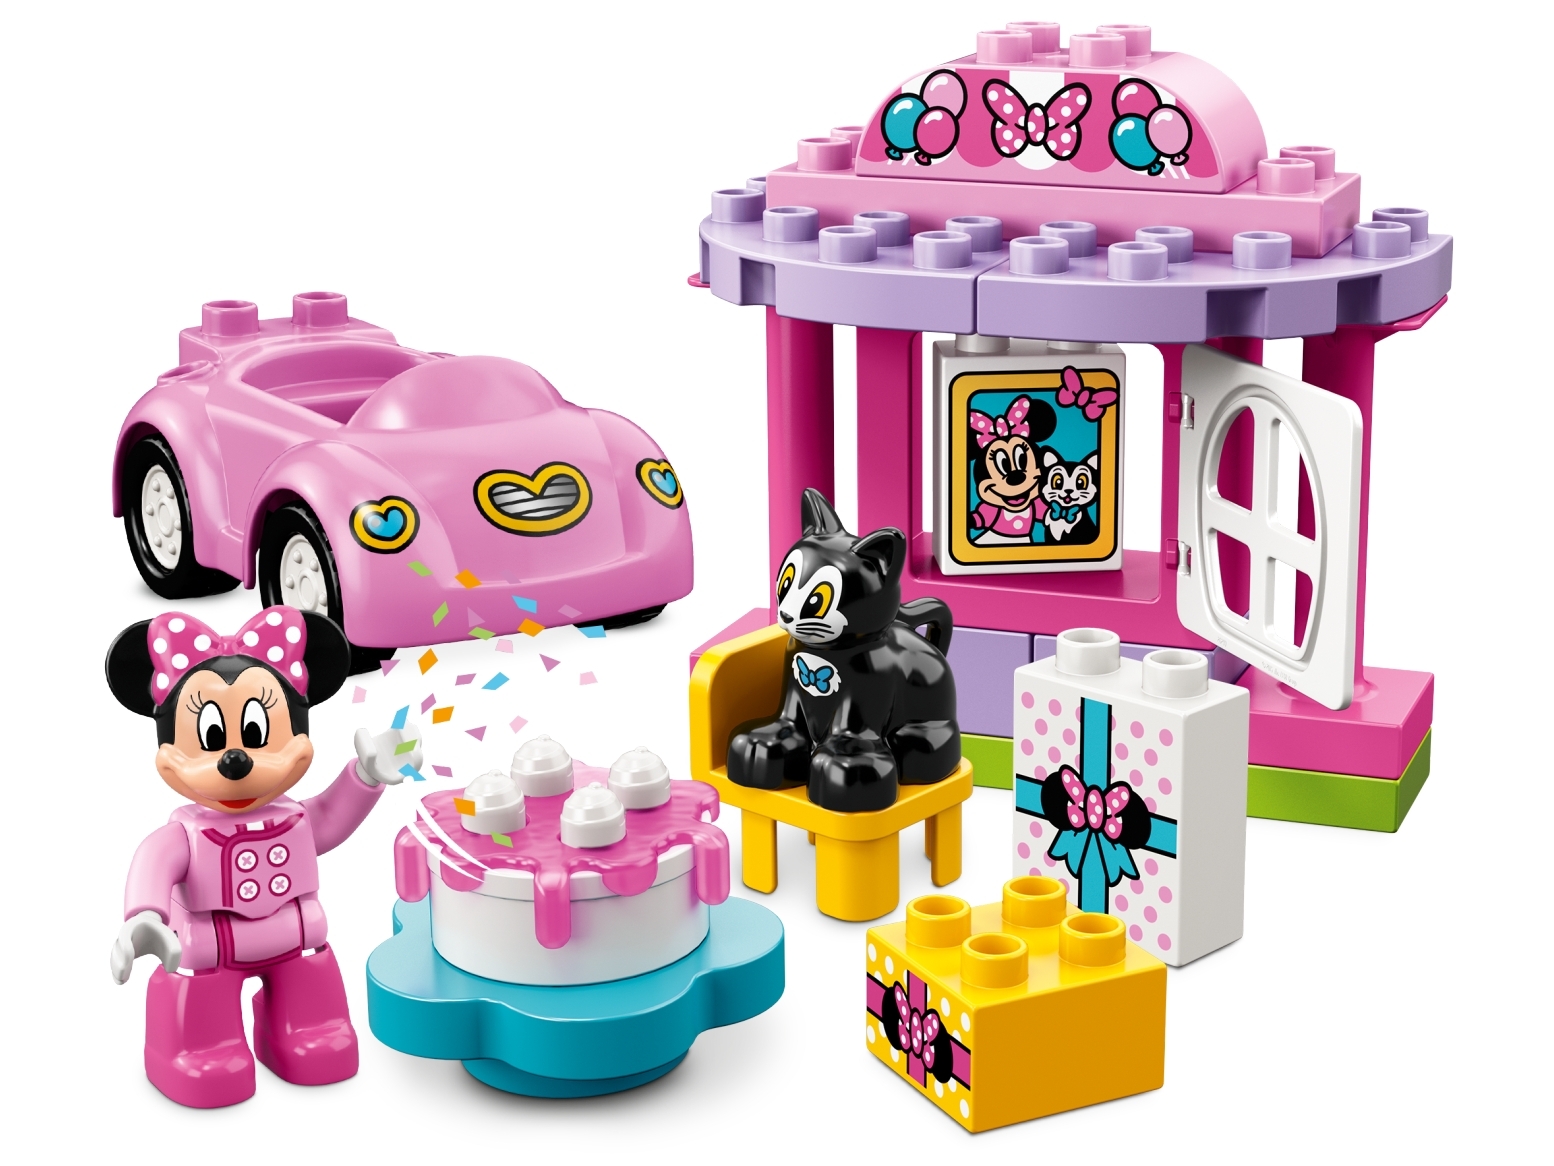 La Fete D Anniversaire De Minnie Disney Boutique Lego Officielle Be